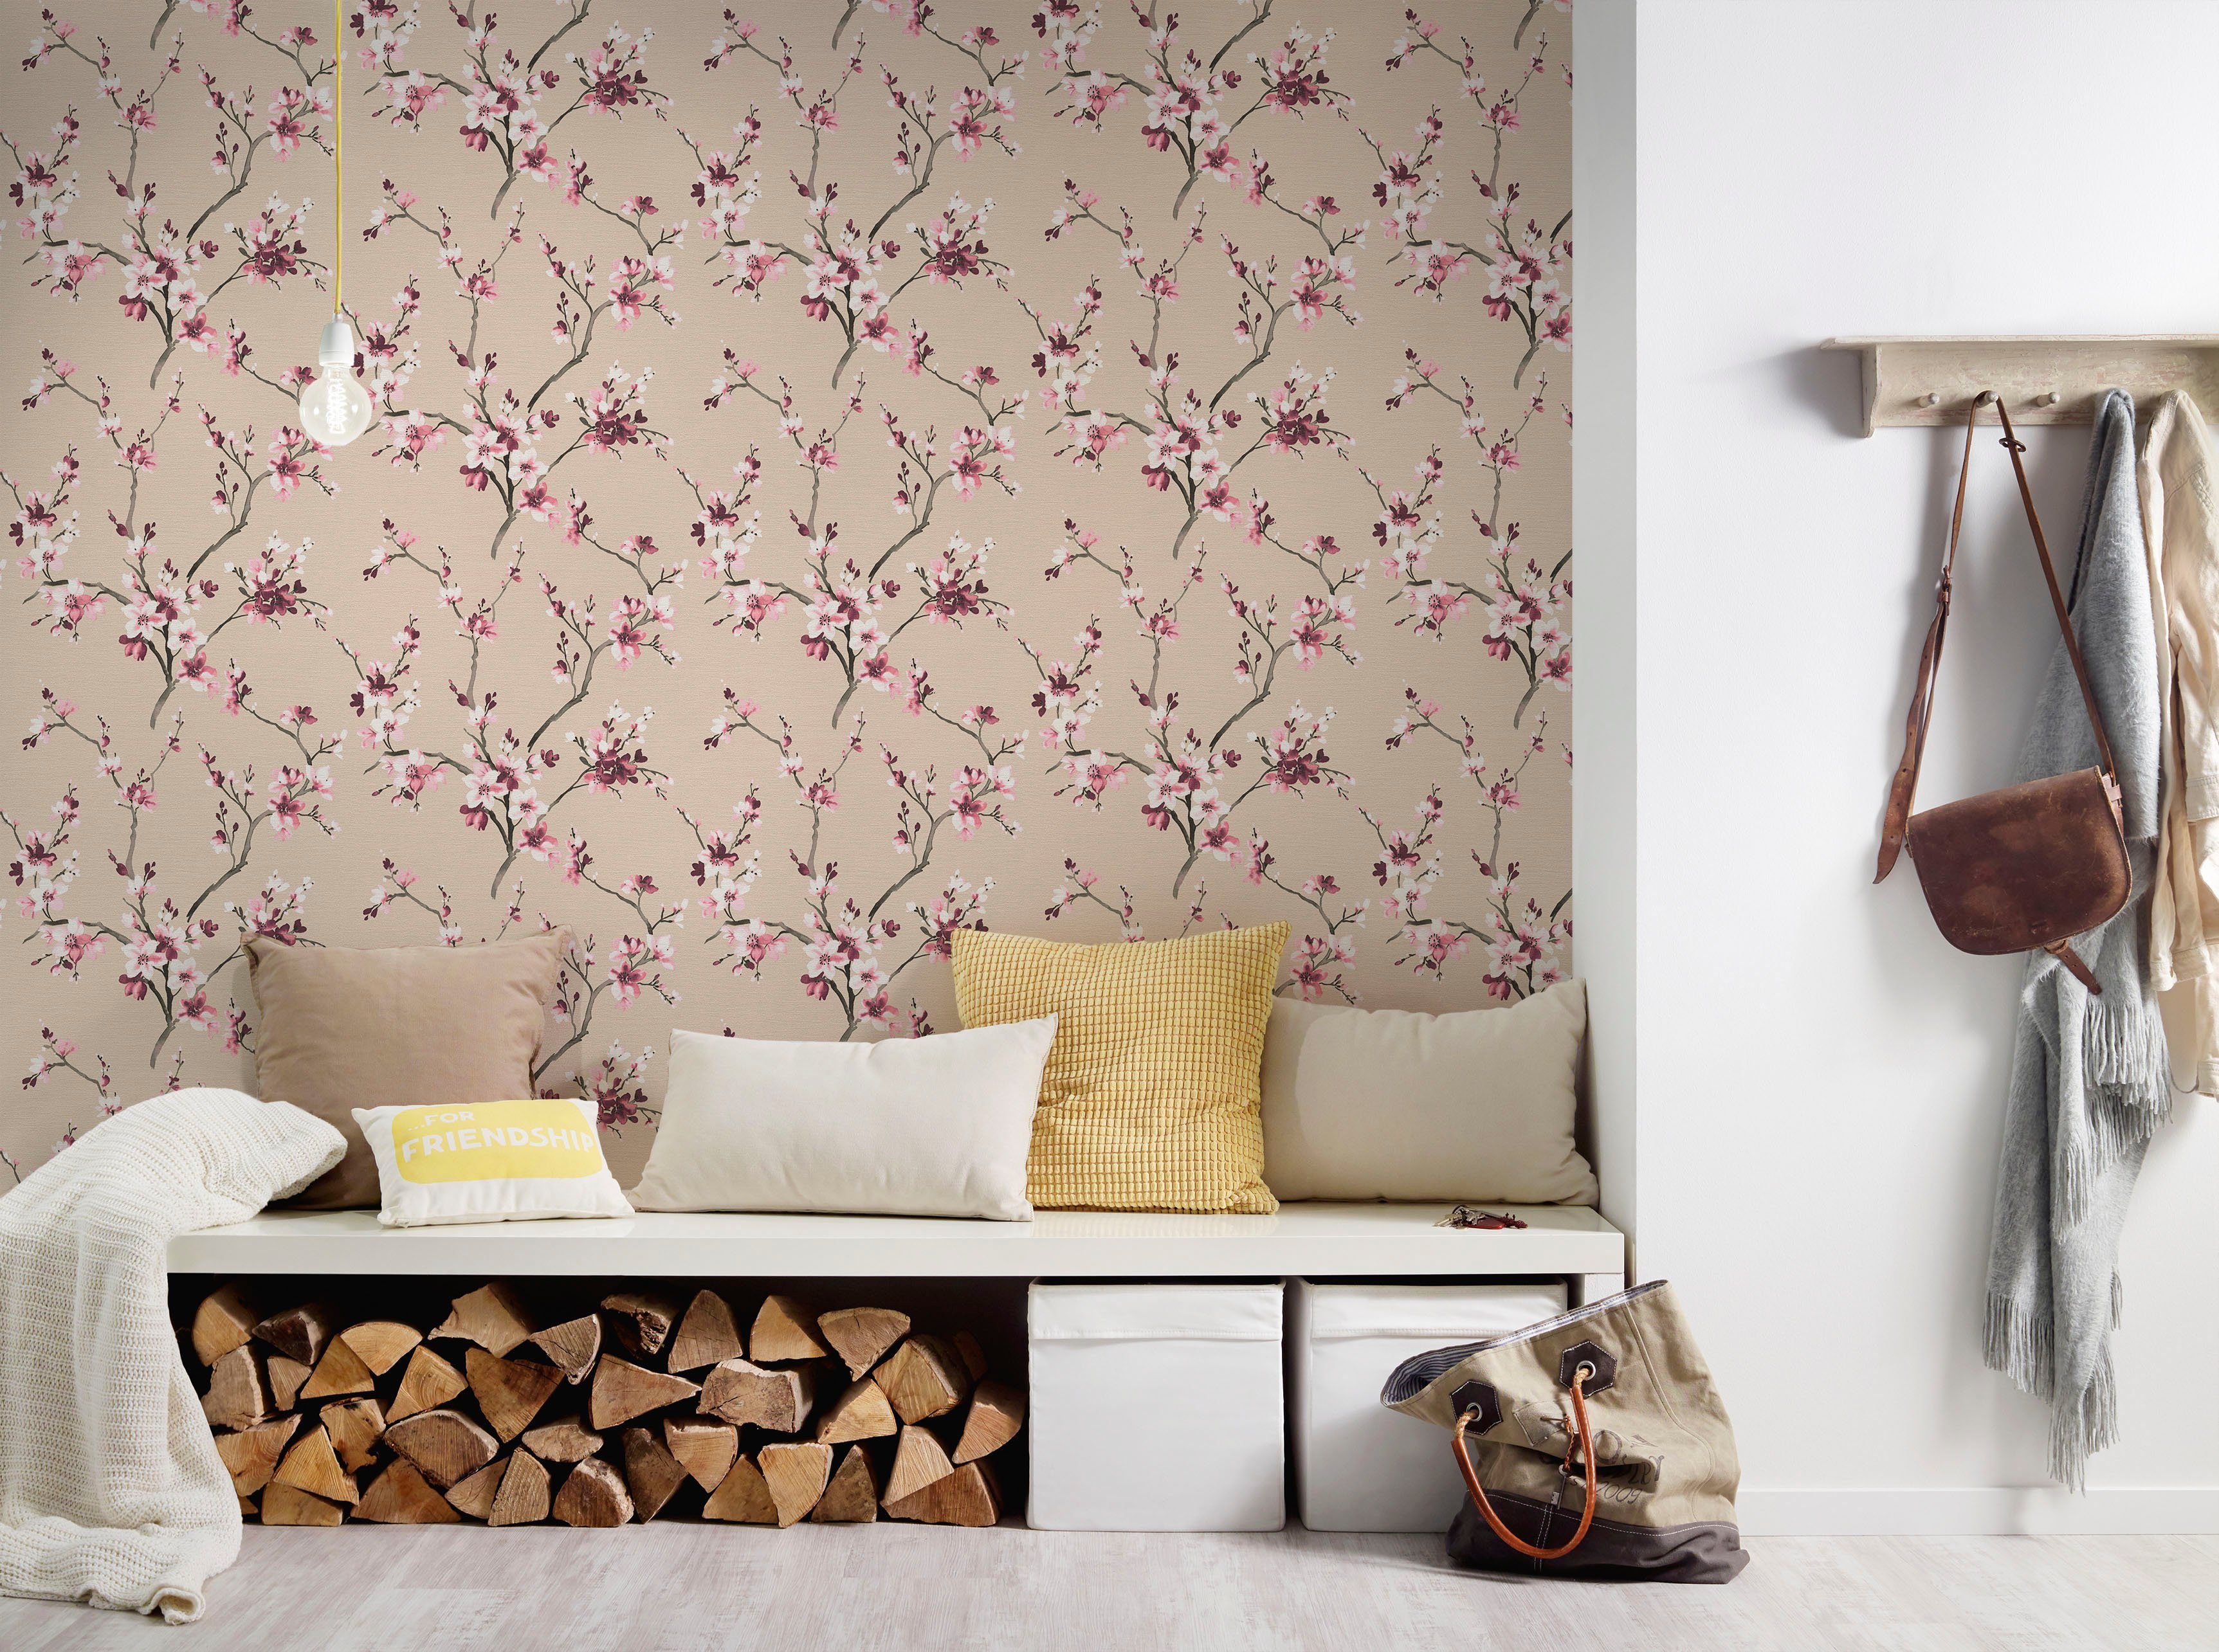 living walls Vliestapete floral, Blumenoptik geblümt, Tapete Lodge, rosa/beige Desert natürlich, strukturiert